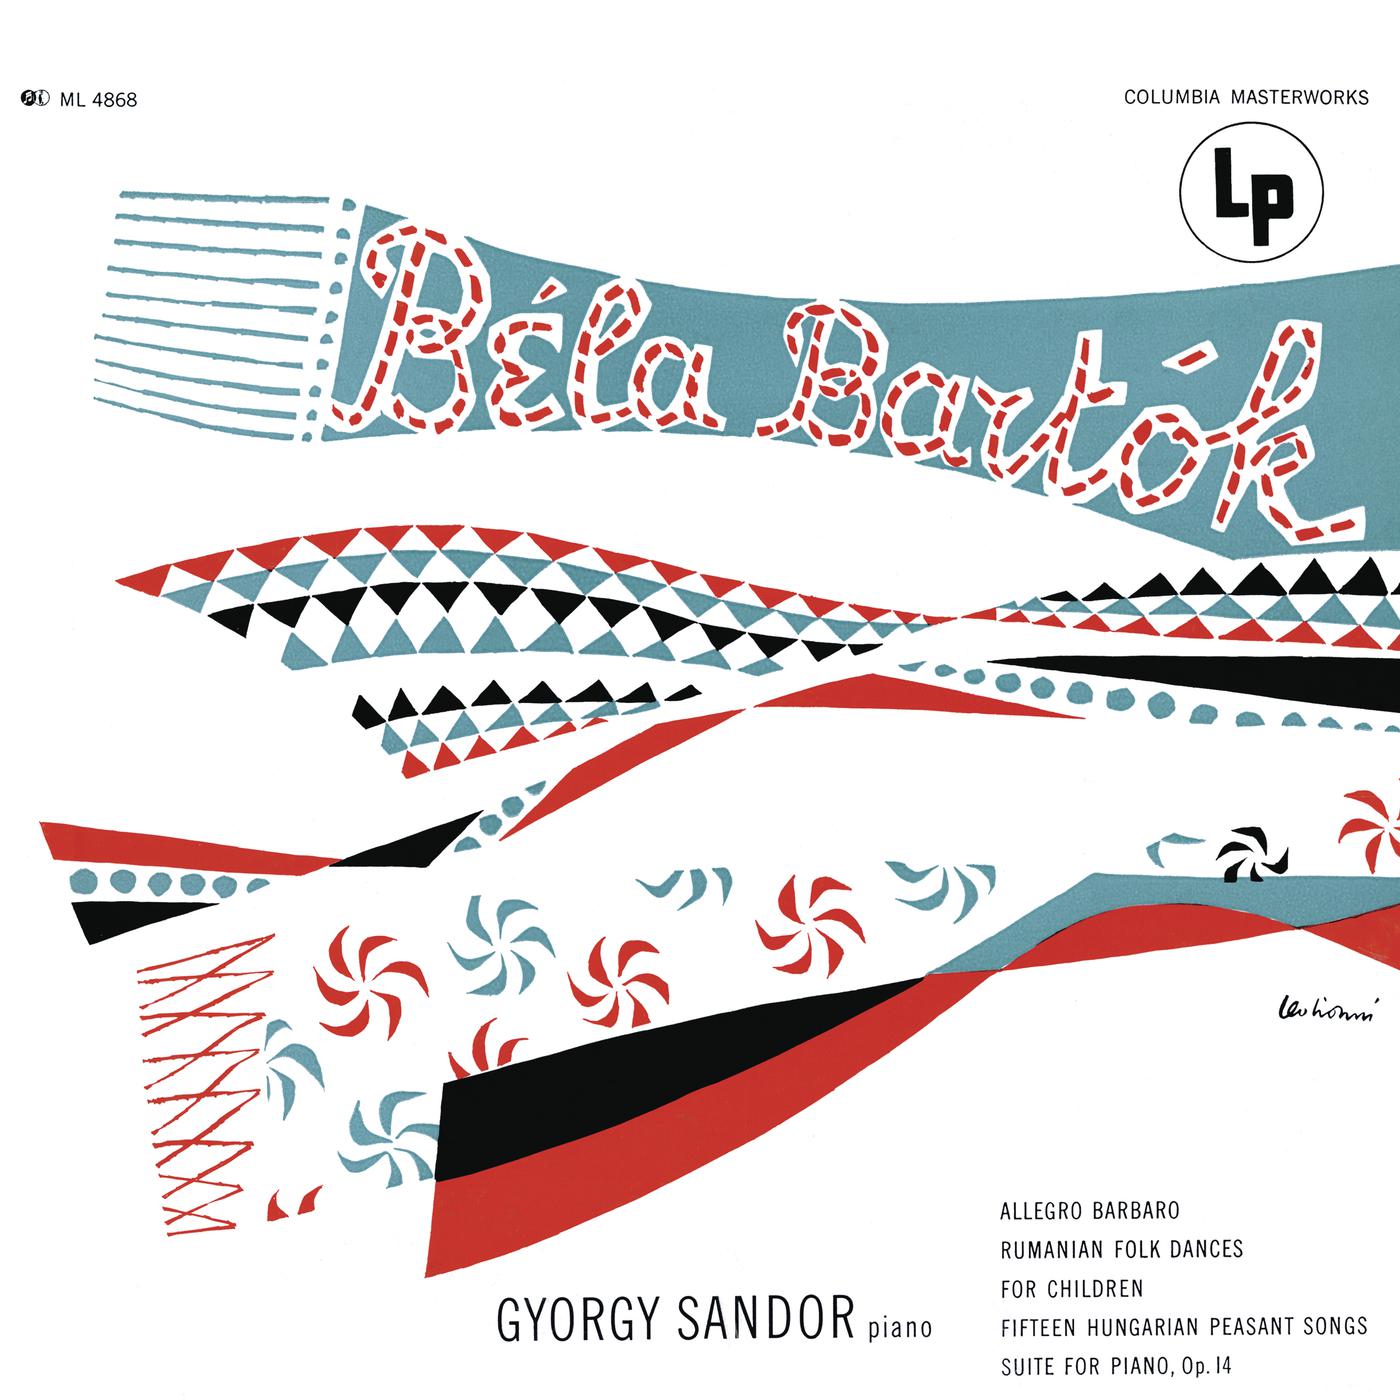 György Sàndor - 15 Hungarian Peasant Songs, Sz. 71:15. Old Dance Tunes. Allegro